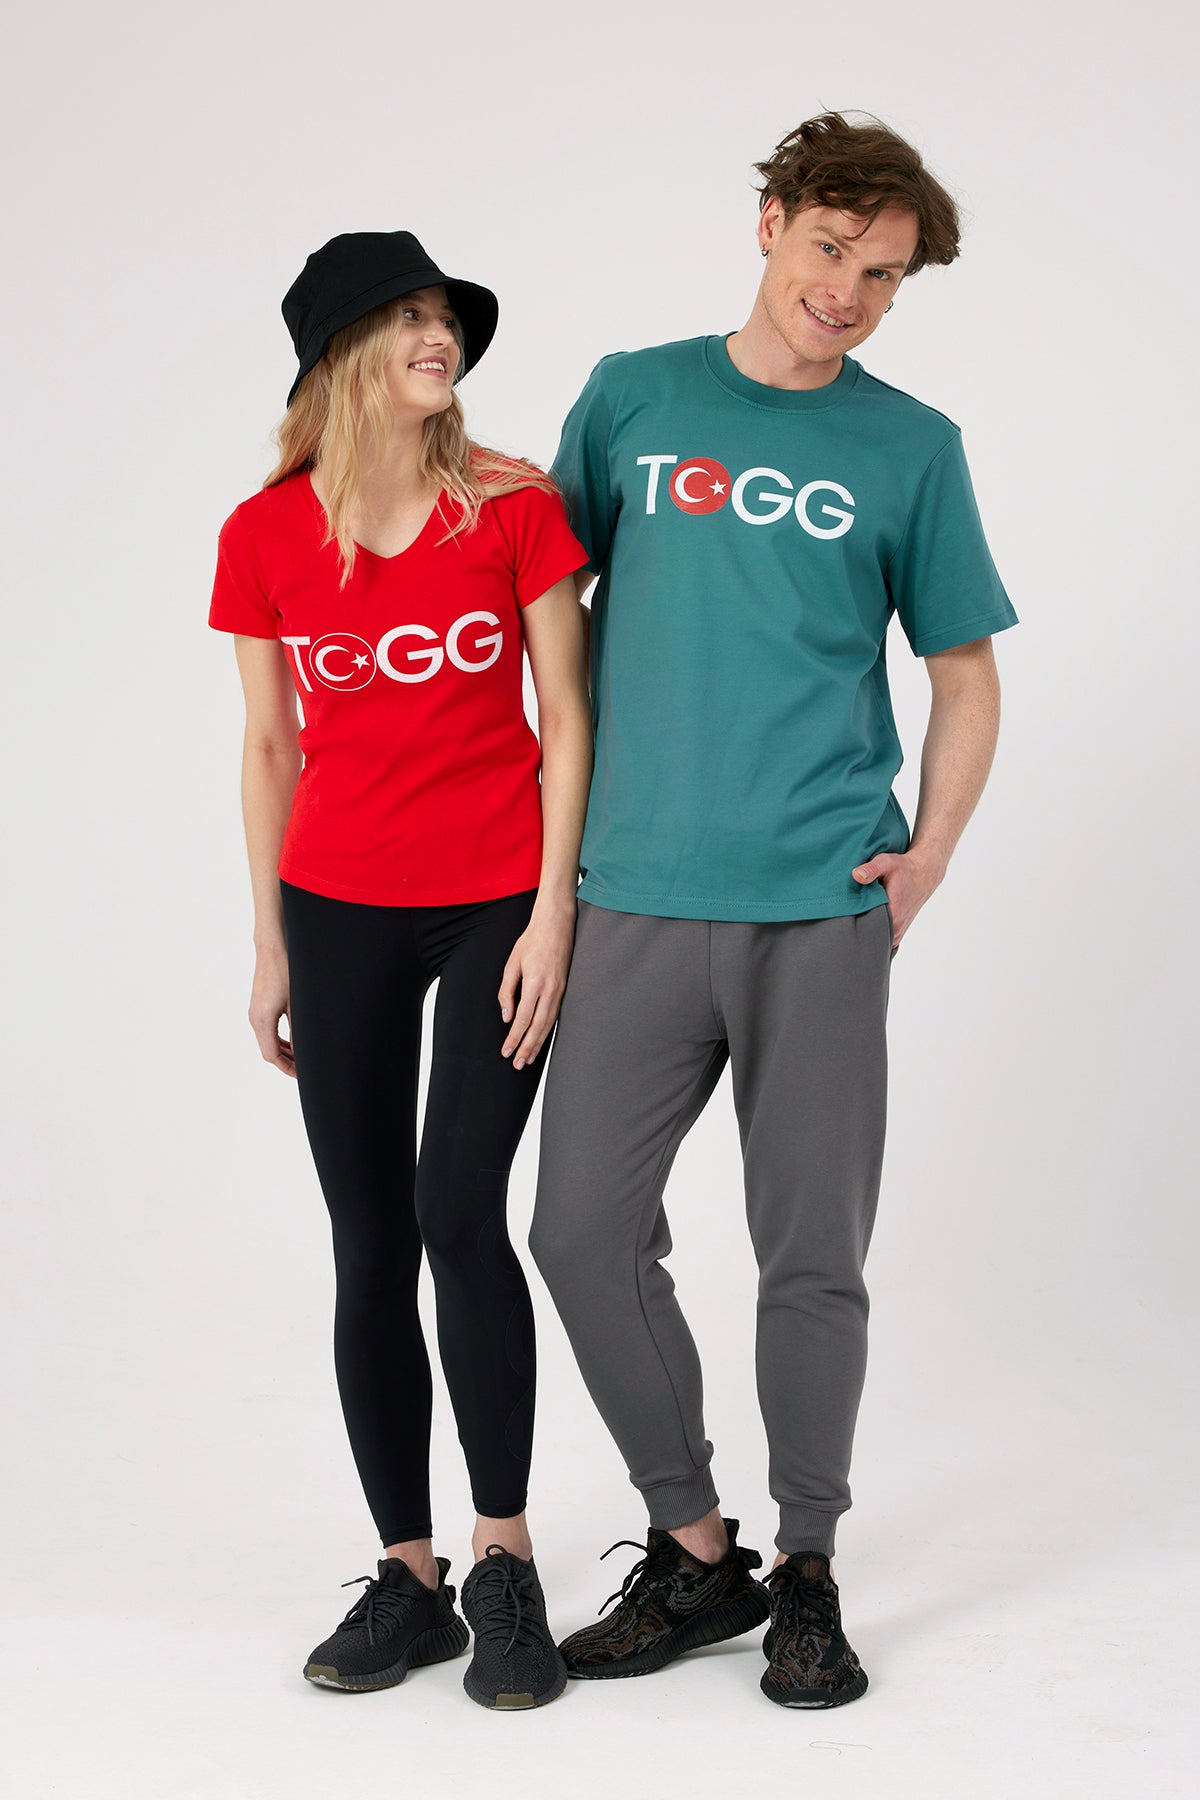 Togg Turkey t-shirt